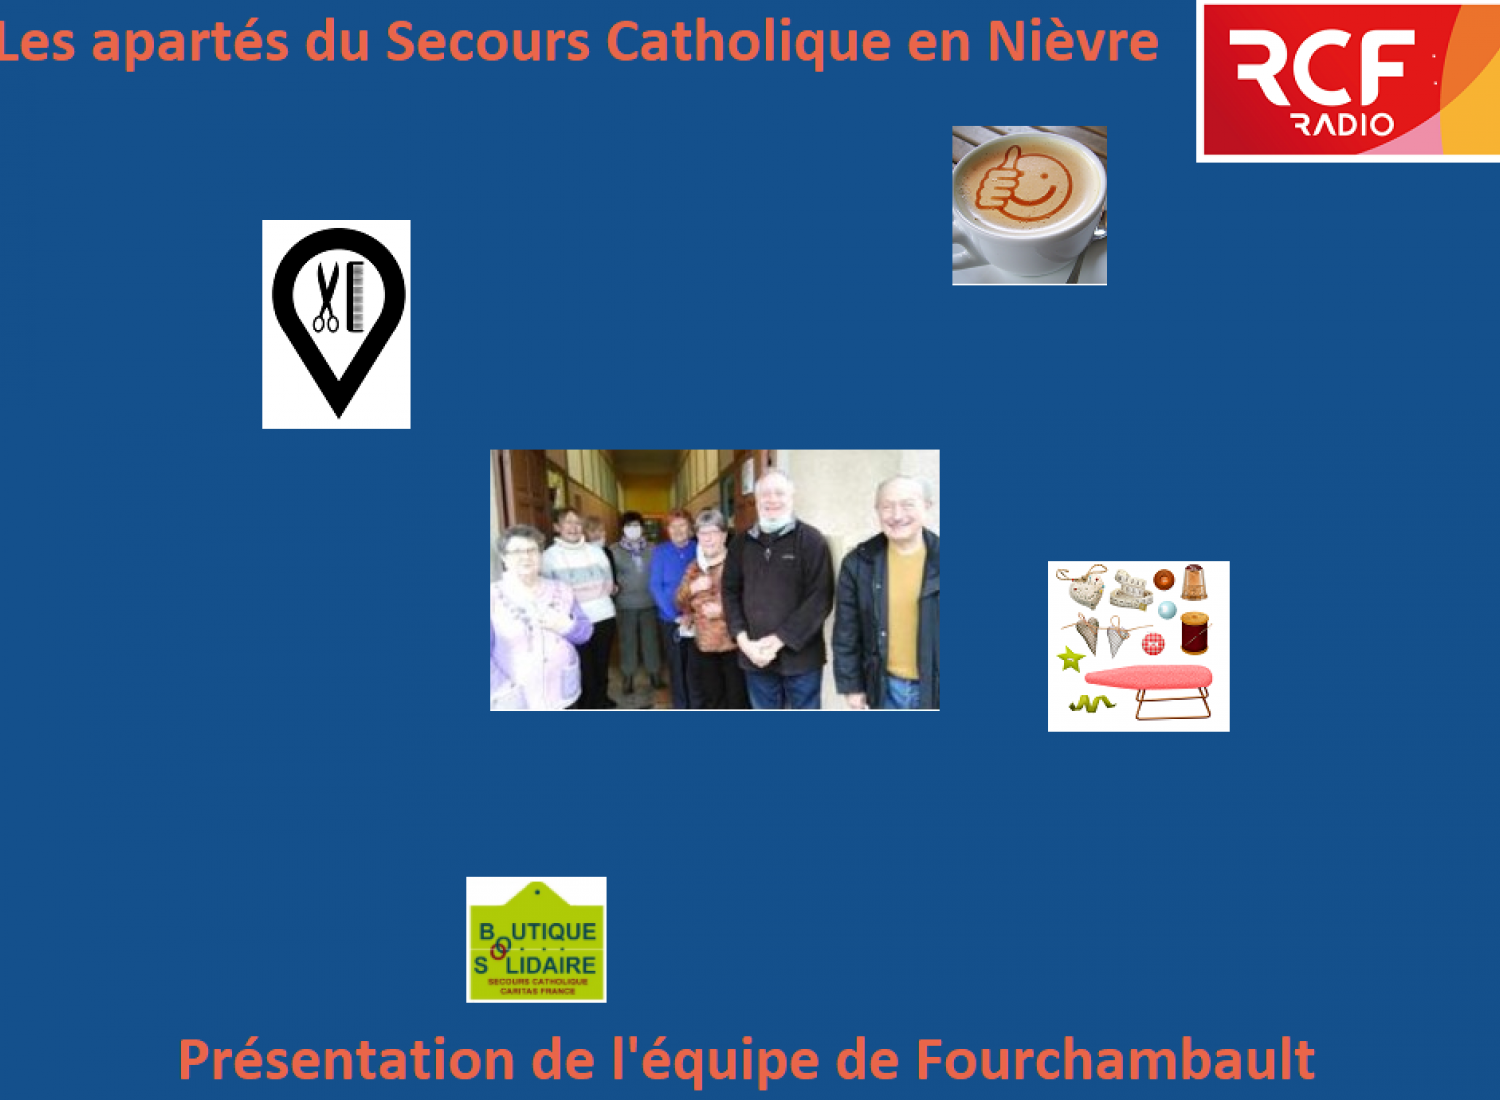 Présentation de l'équipe de Fourchambault dans l'émission "Les apartés du Secours Catholique"